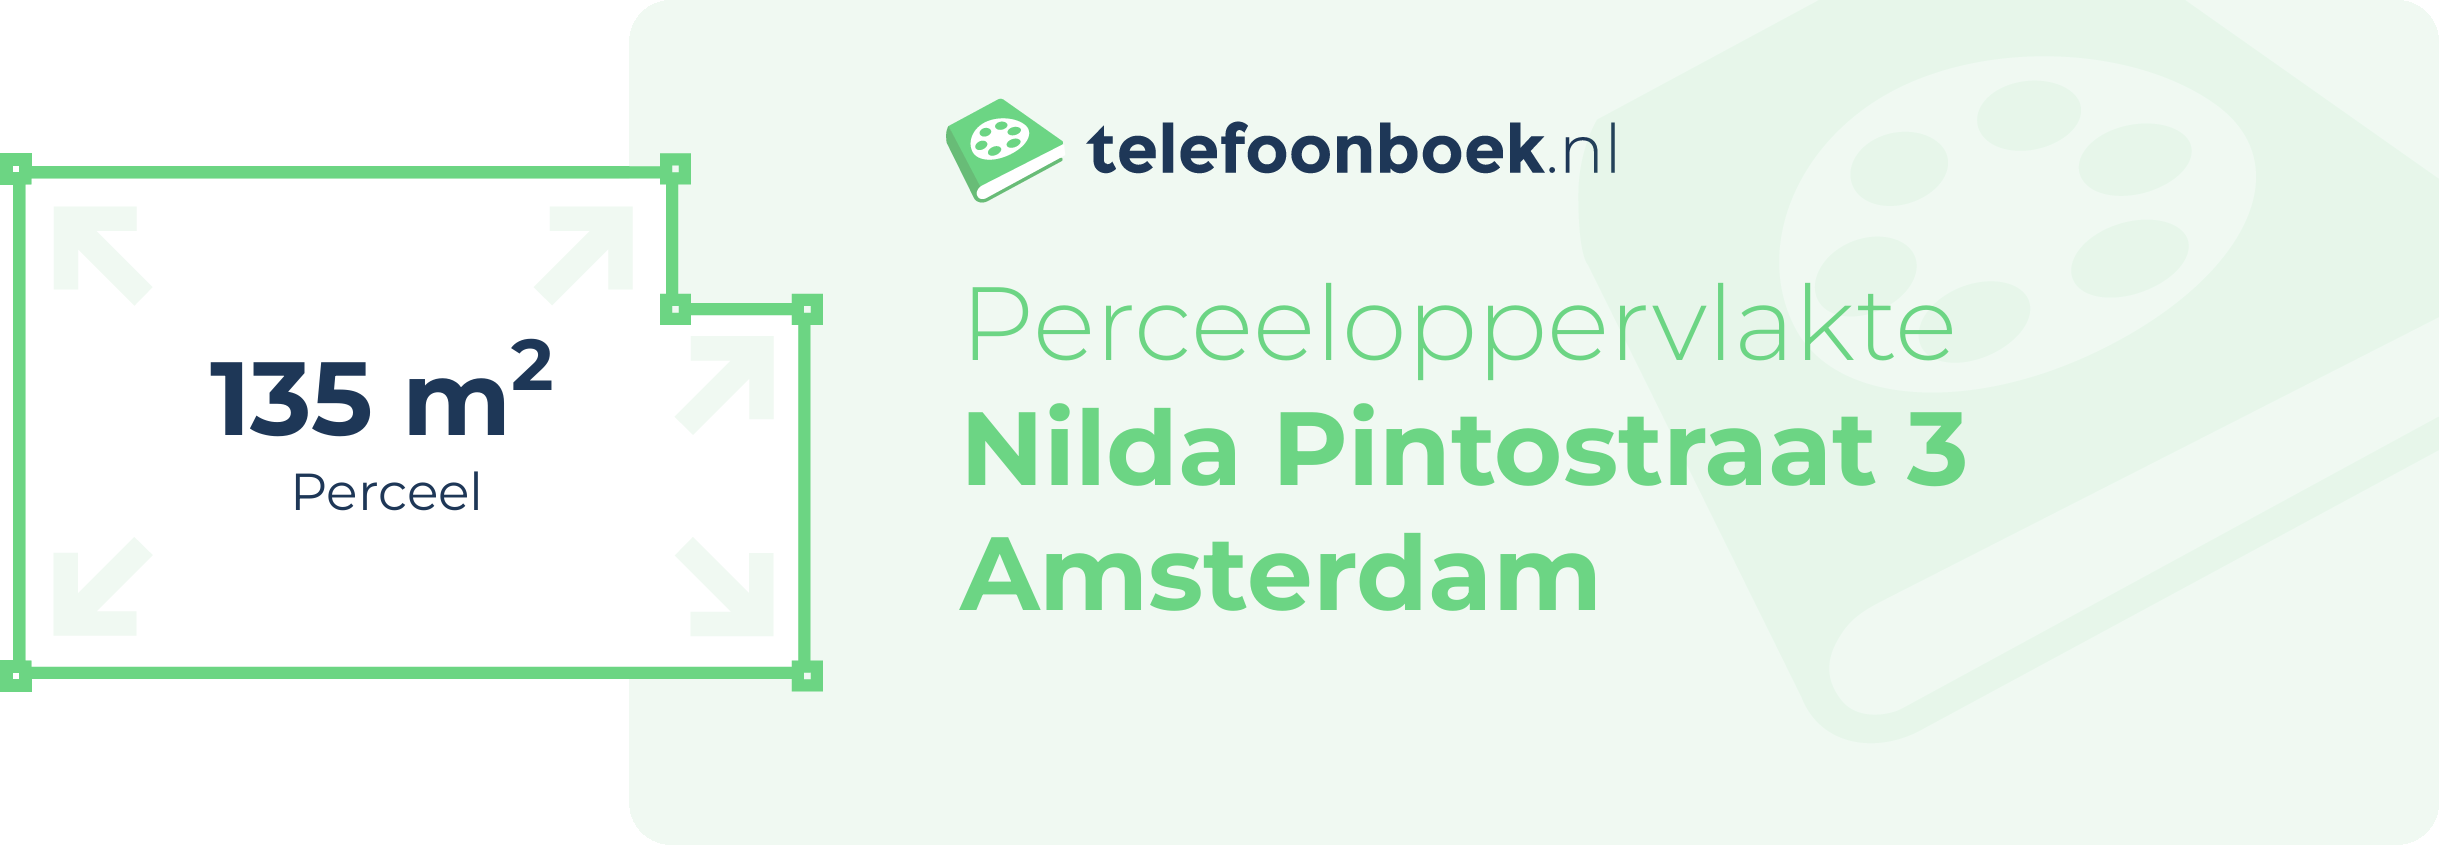 Perceeloppervlakte Nilda Pintostraat 3 Amsterdam